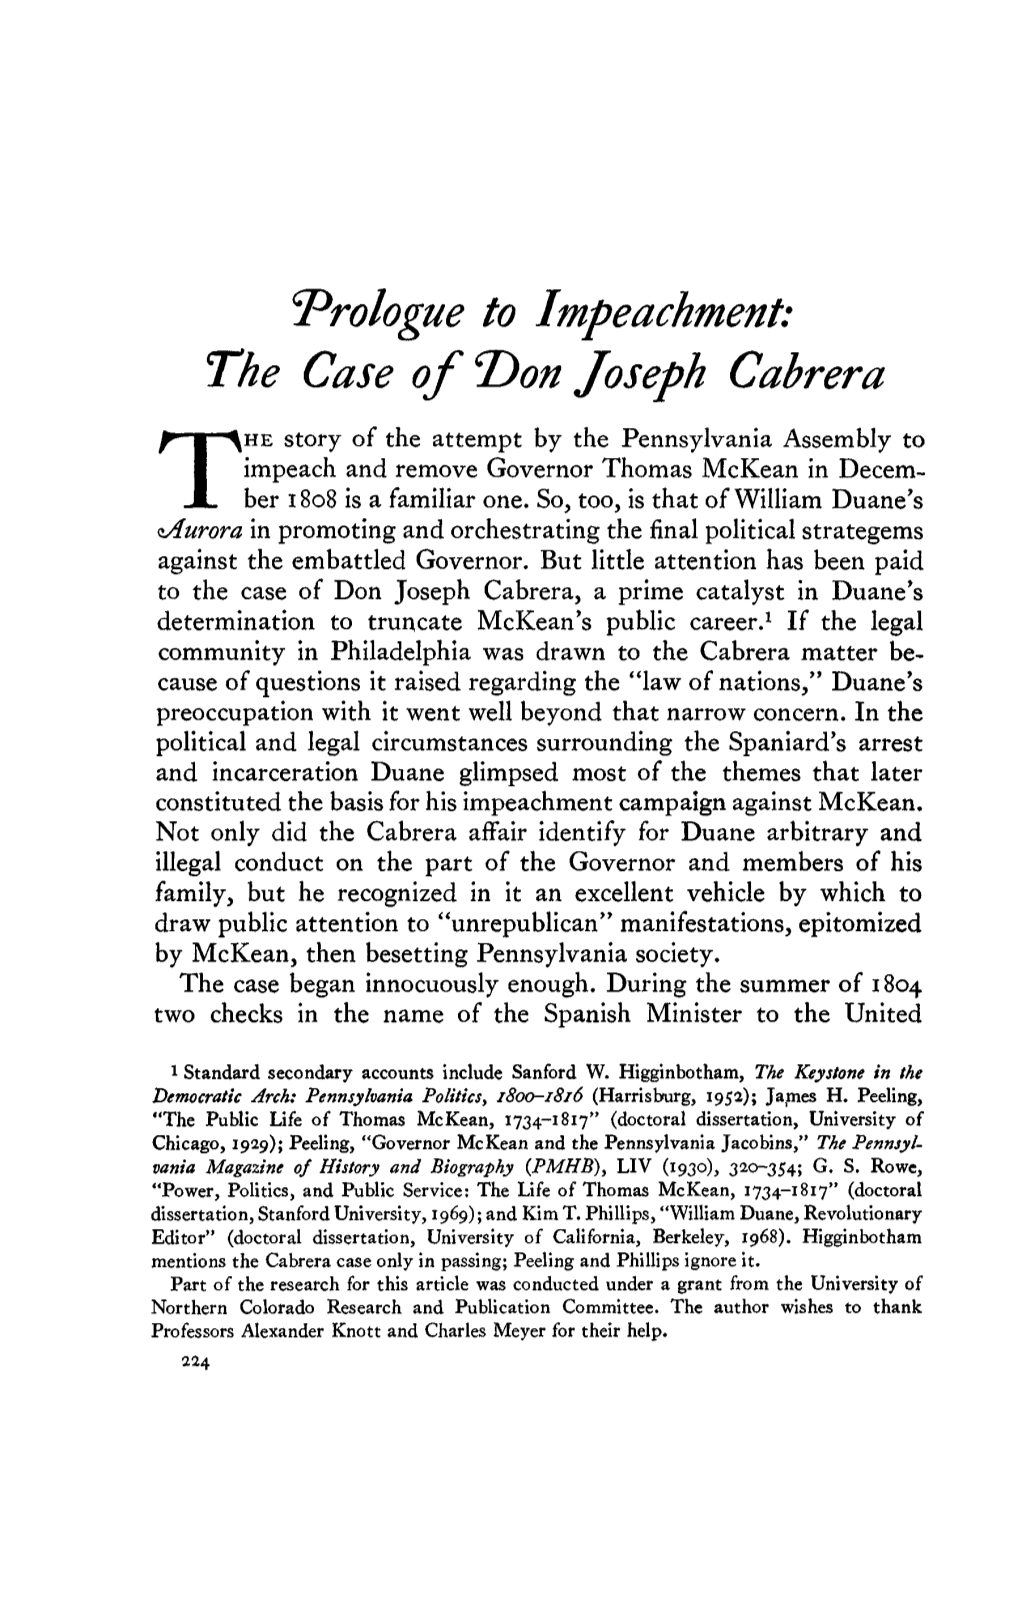 The Case of 1)On Joseph Cabrera